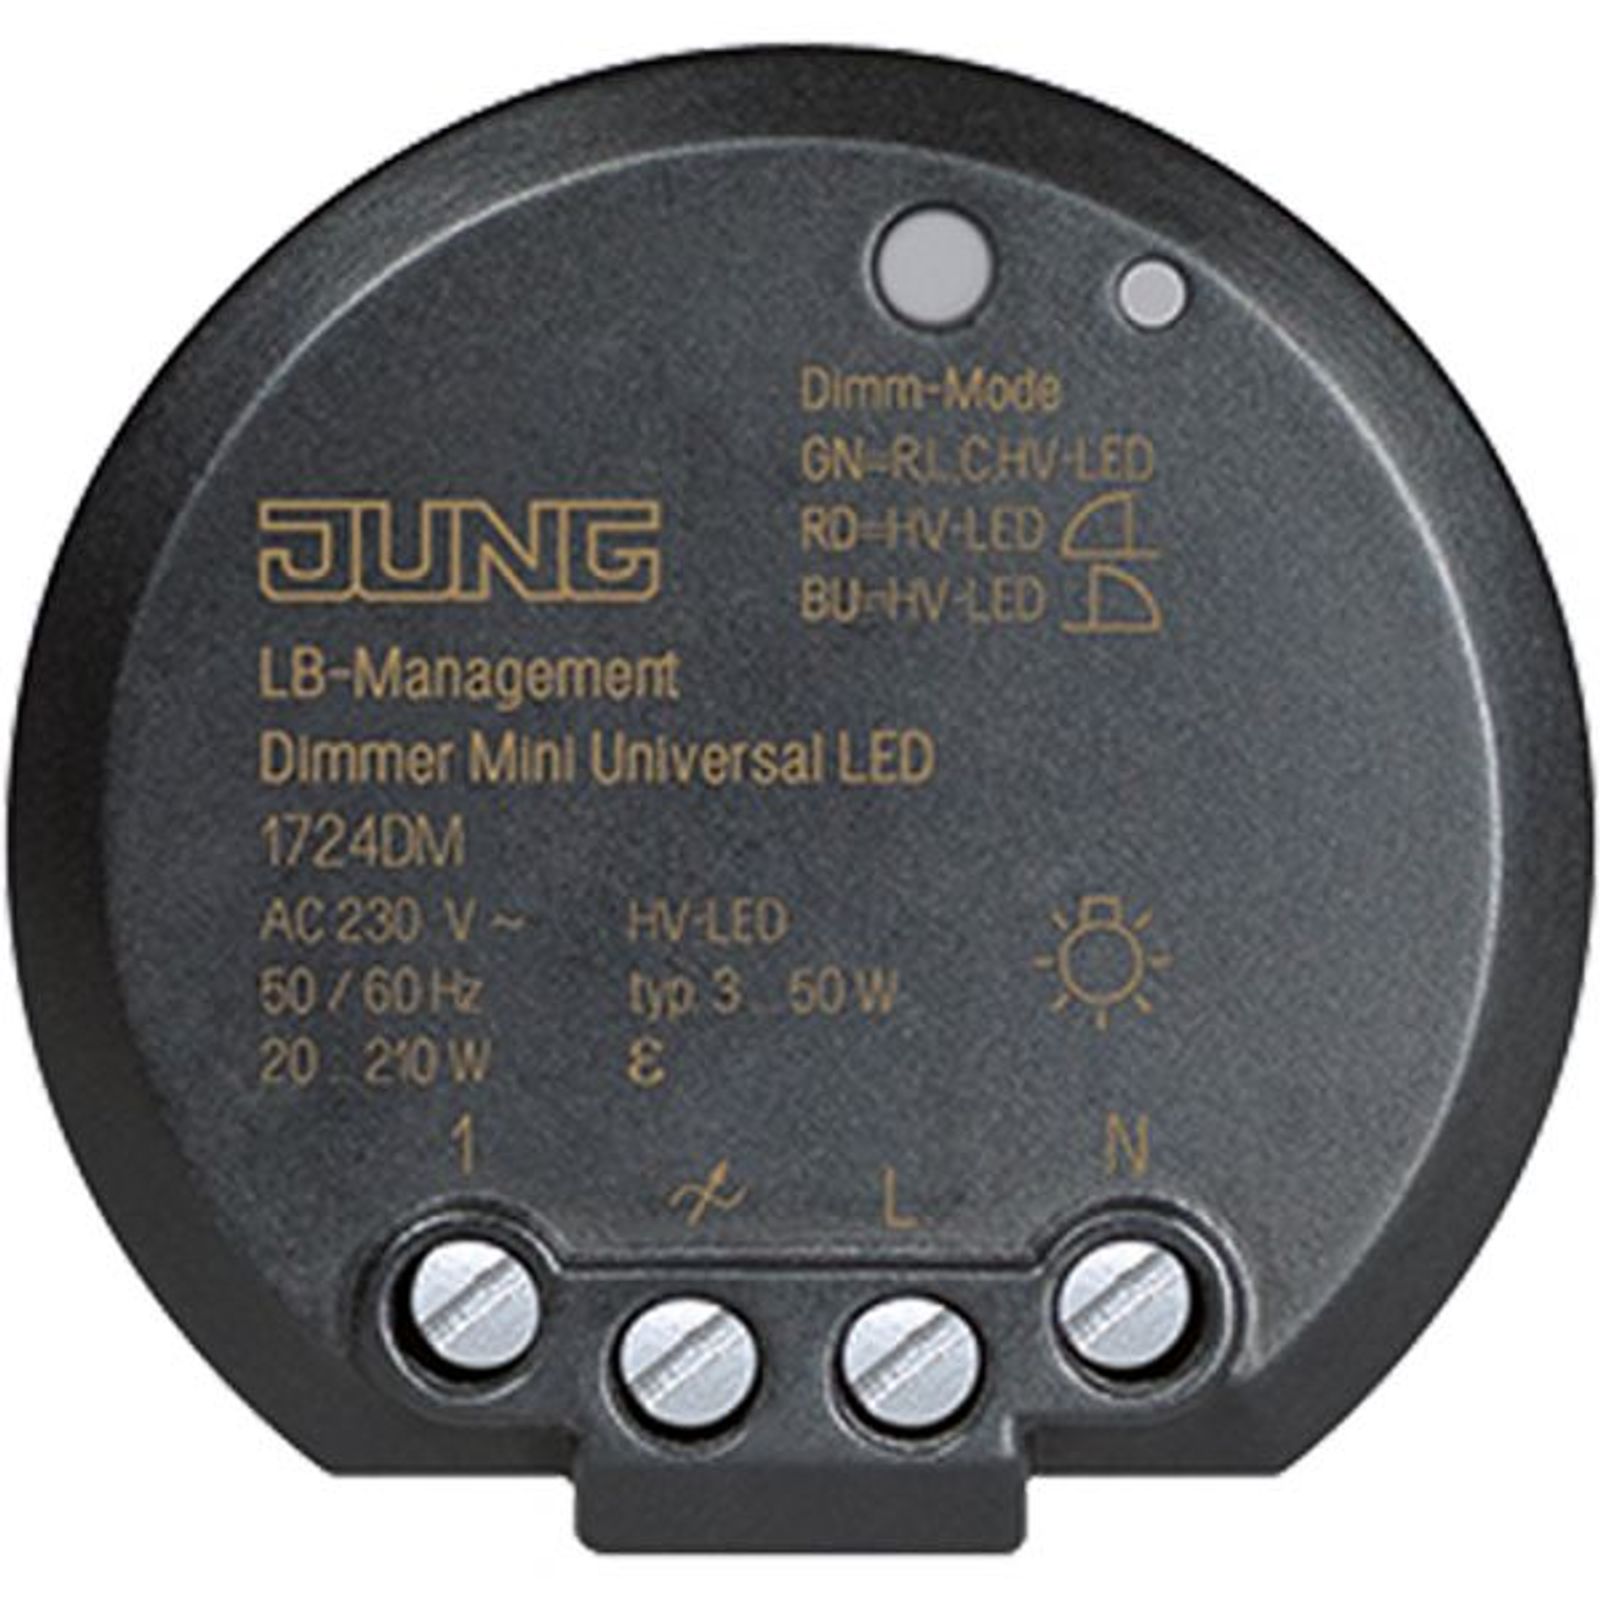 Jung Dimmer uni 20-210W UP 1724 DM Lichtwertspeicher